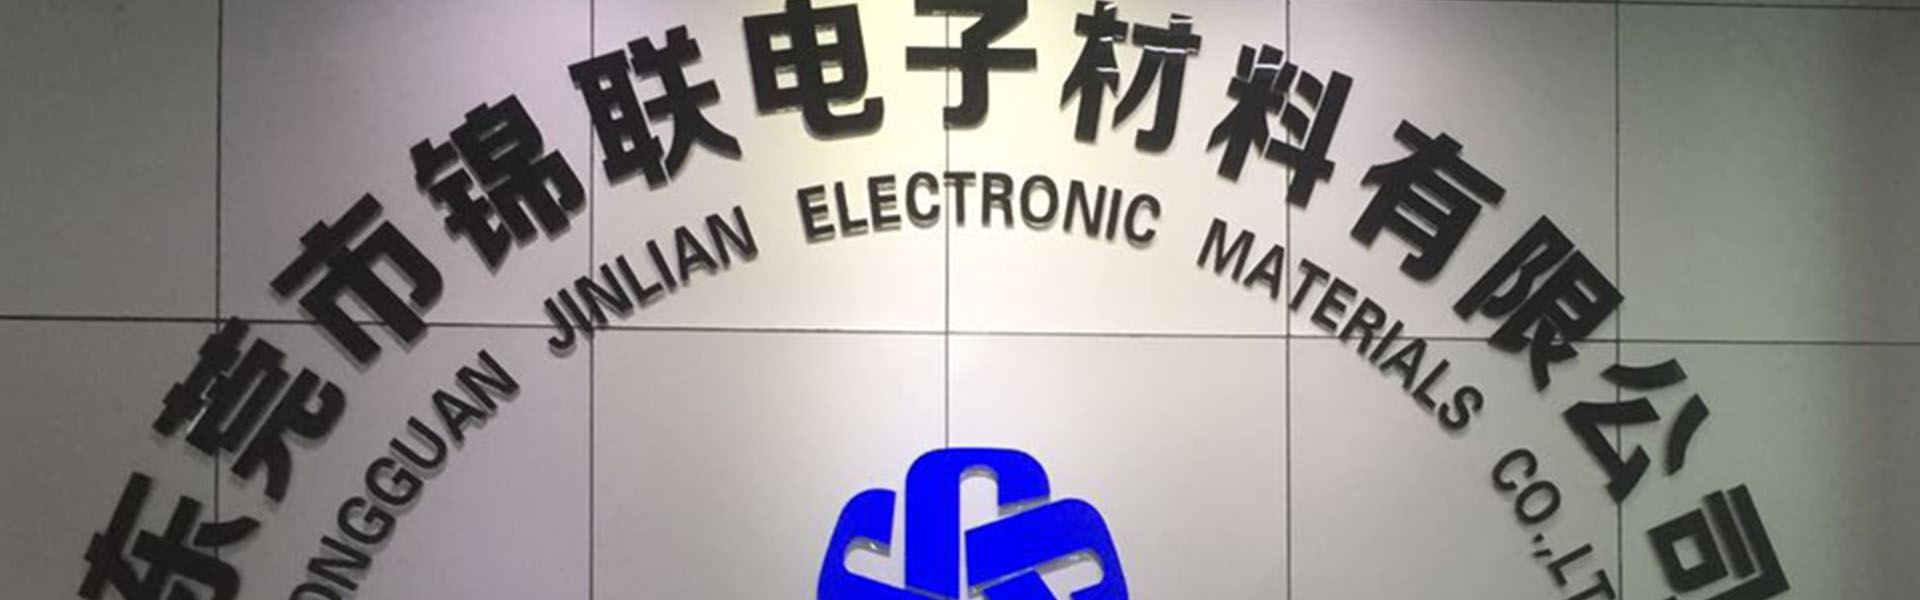 blisterkarp, salv, kandeklapp,Dongguan Jinlian Electronic Materials Co., Ltd